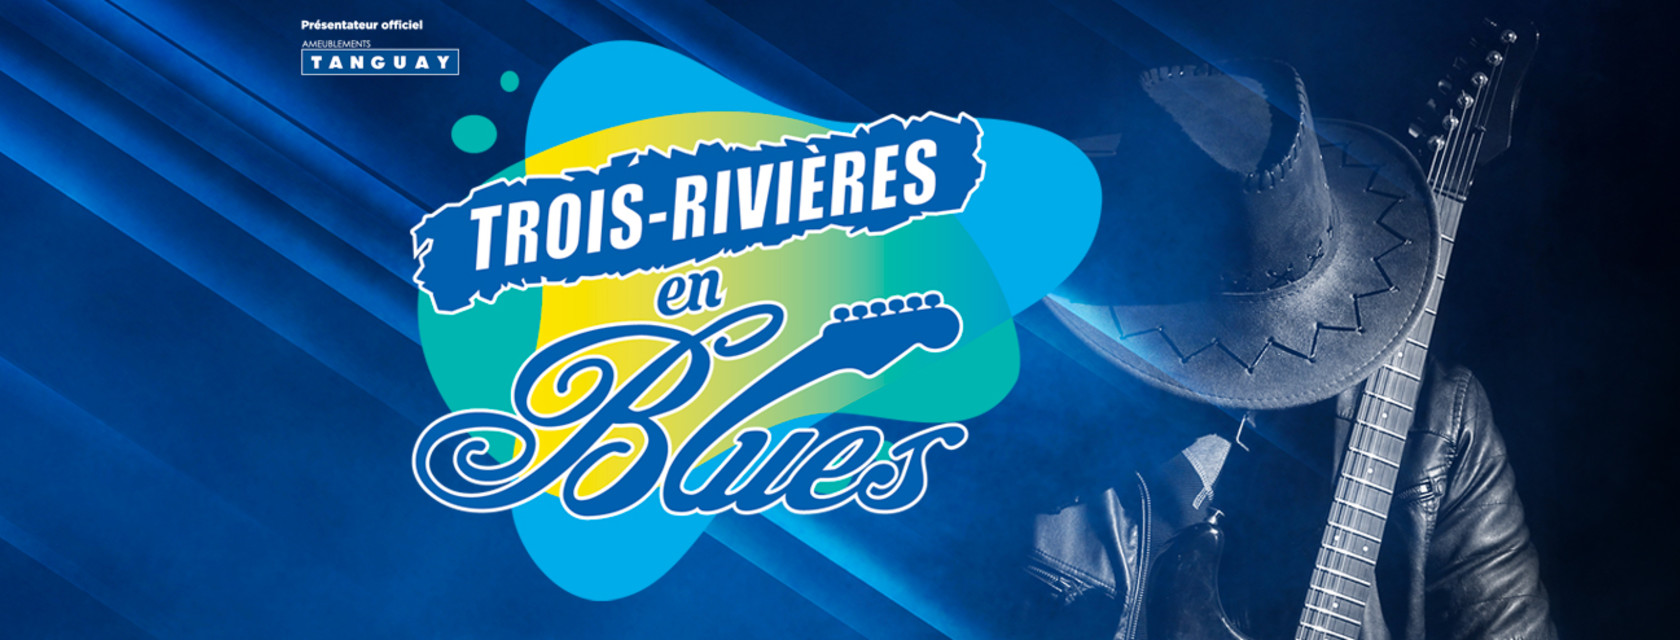 Trois-Rivières en Blues dévoile les trois premiers artistes de sa programmation 2021